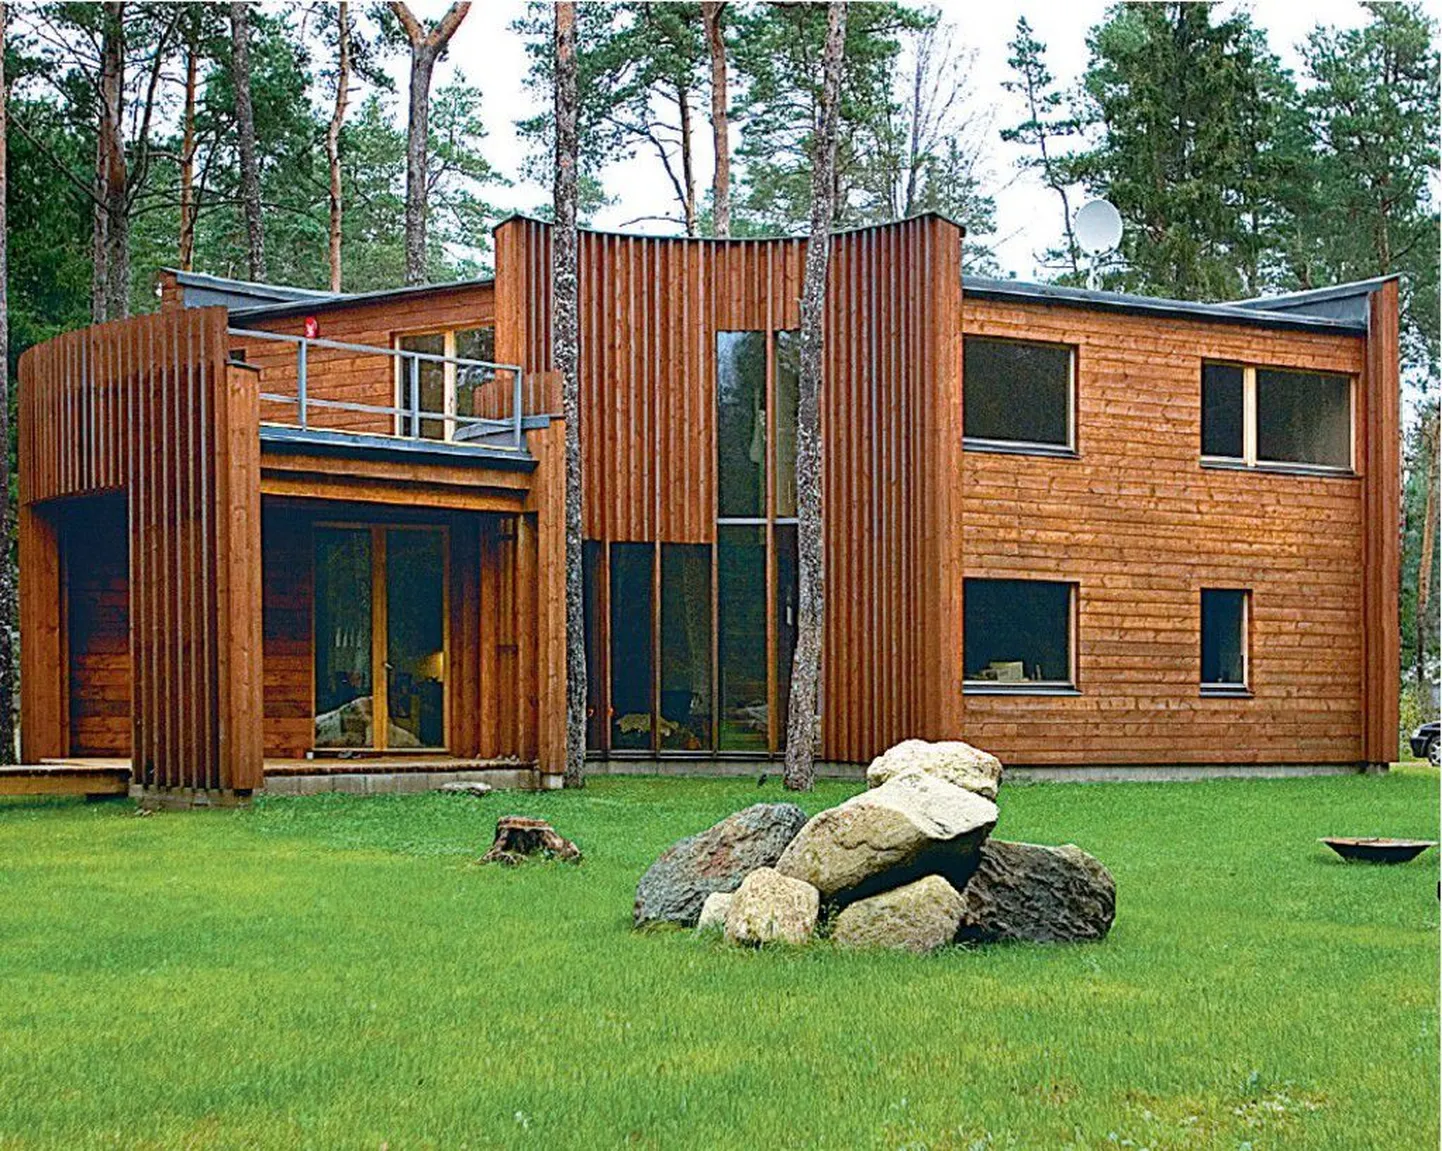 Poolkaarekujulise maja välisviimistluses on kasutatud ainult naturaalset puitu.